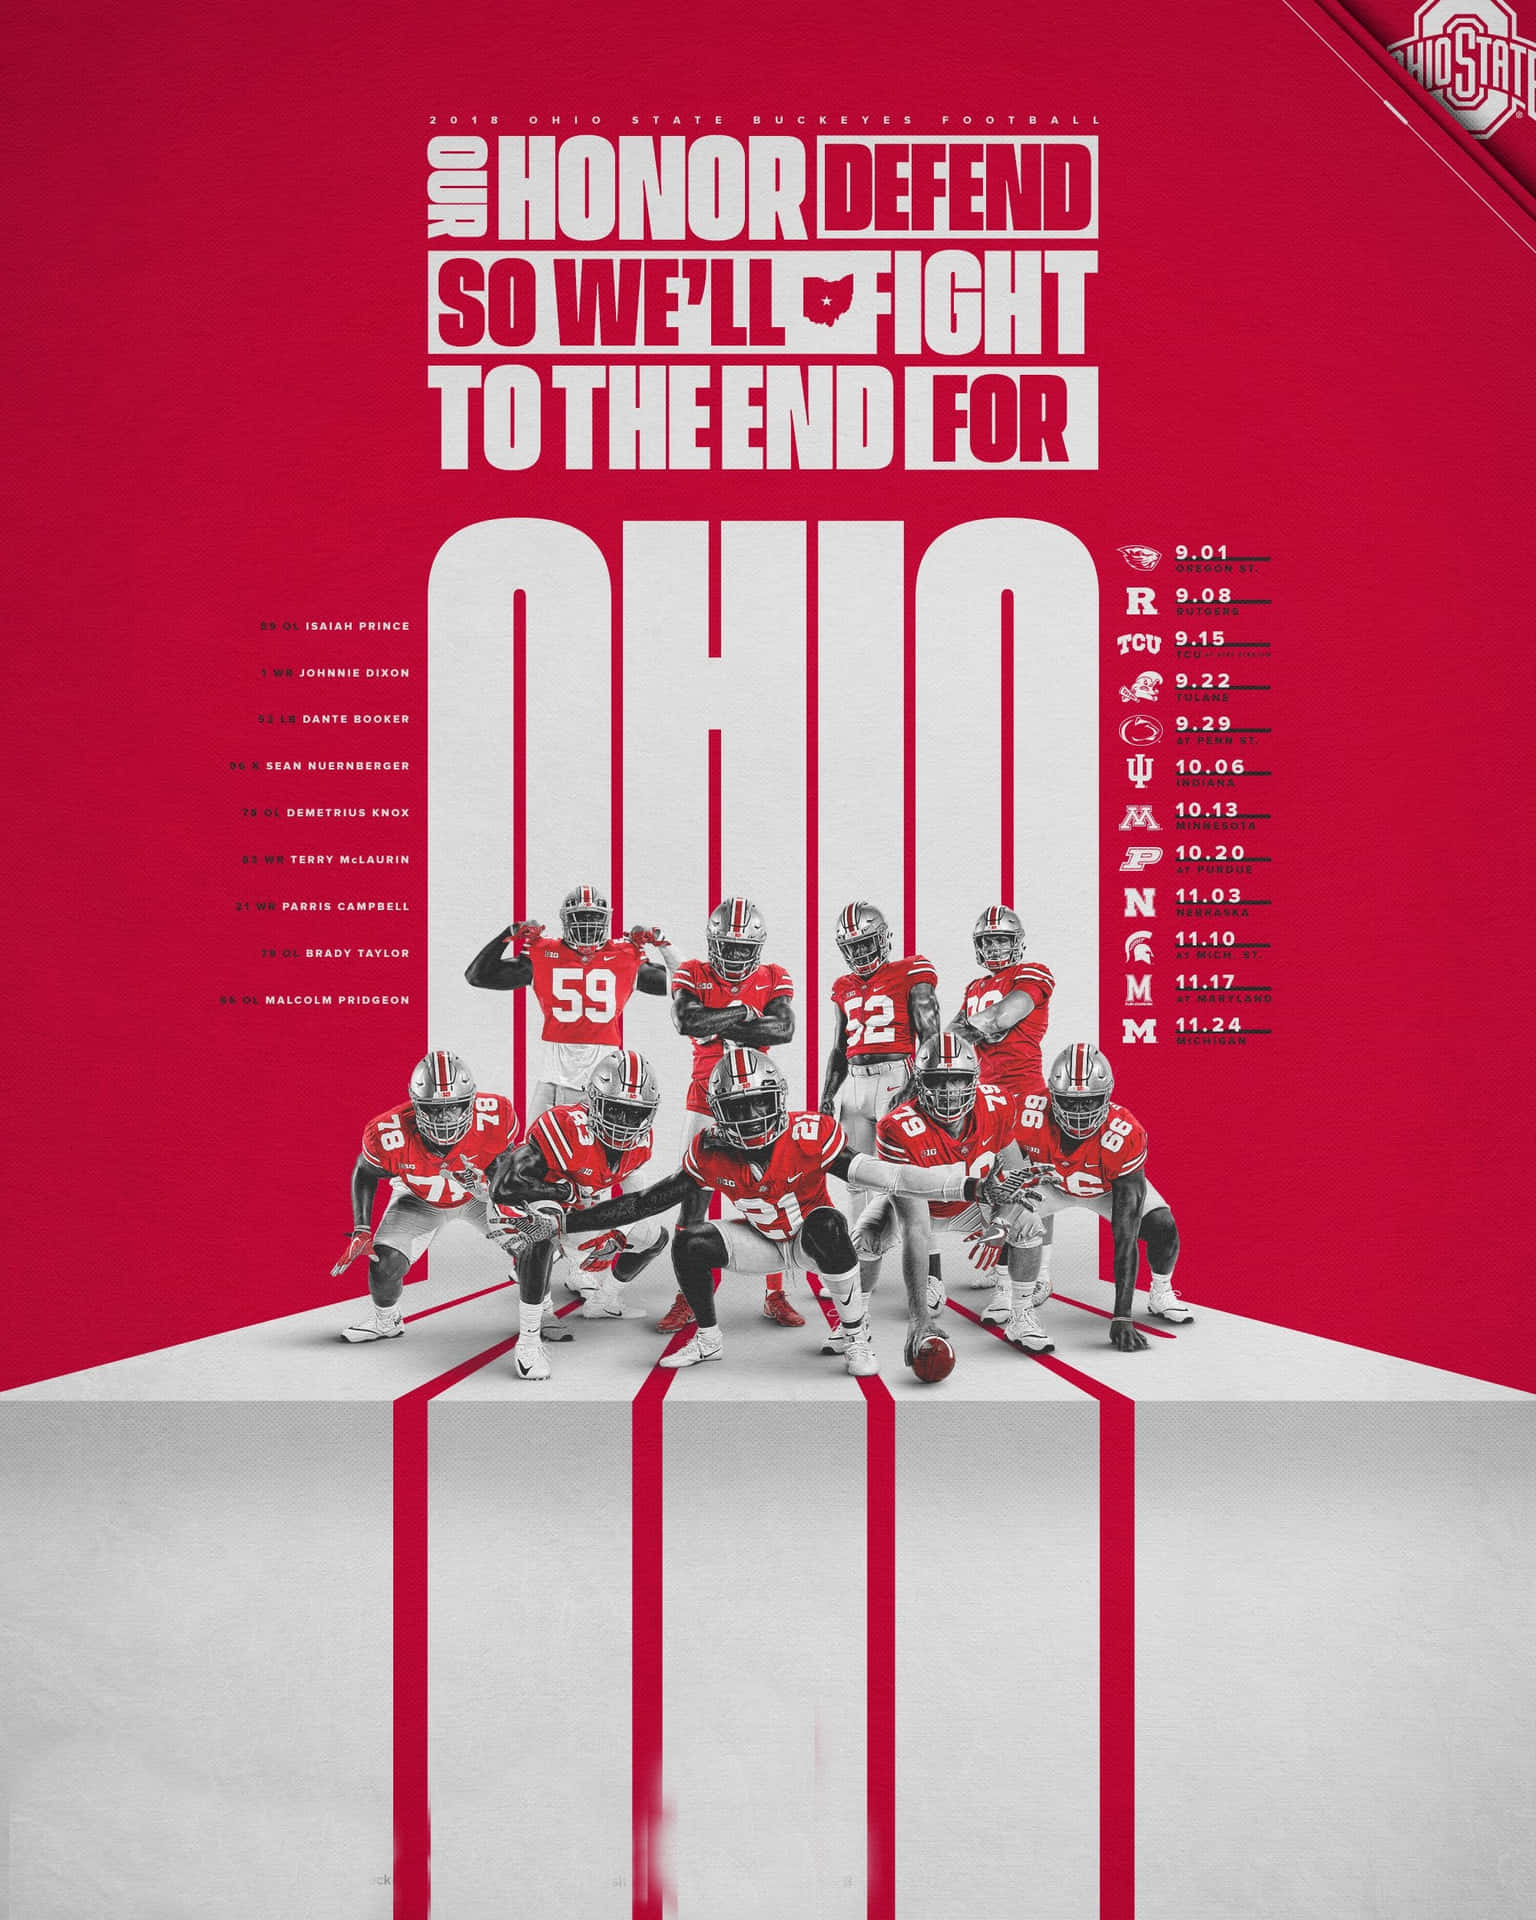 Bereitedeine Ohio State Football Game Day-ausrüstung Vor, Um Die Buckeyes Beim Spiel Zu Sehen! Wallpaper